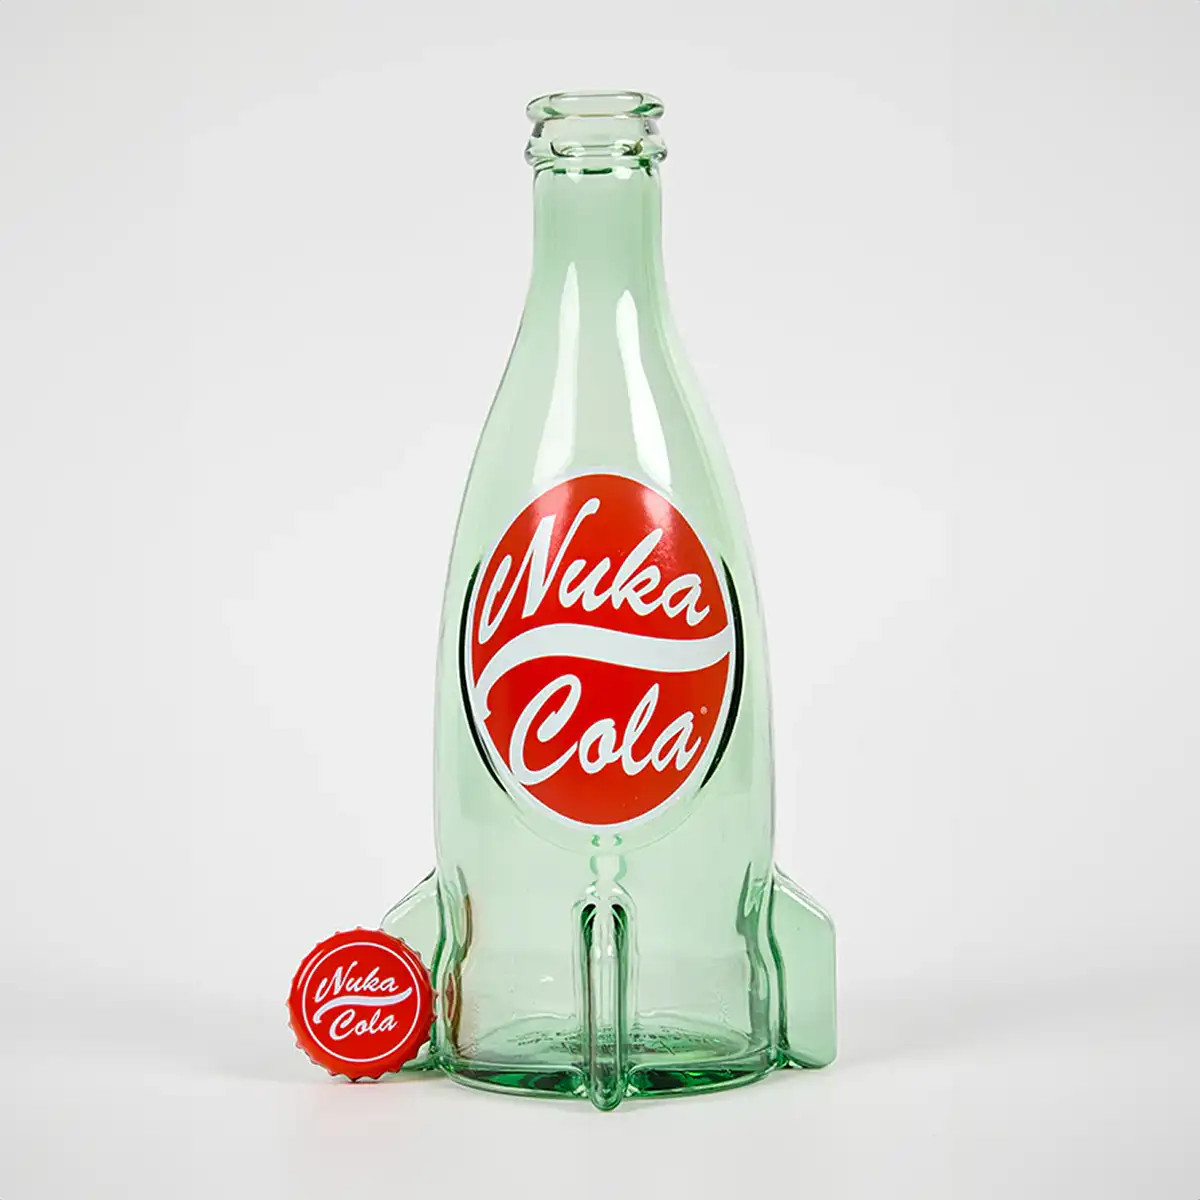 Fallout "Nuka Cola" Glasflasche und Kronkorken Image 5